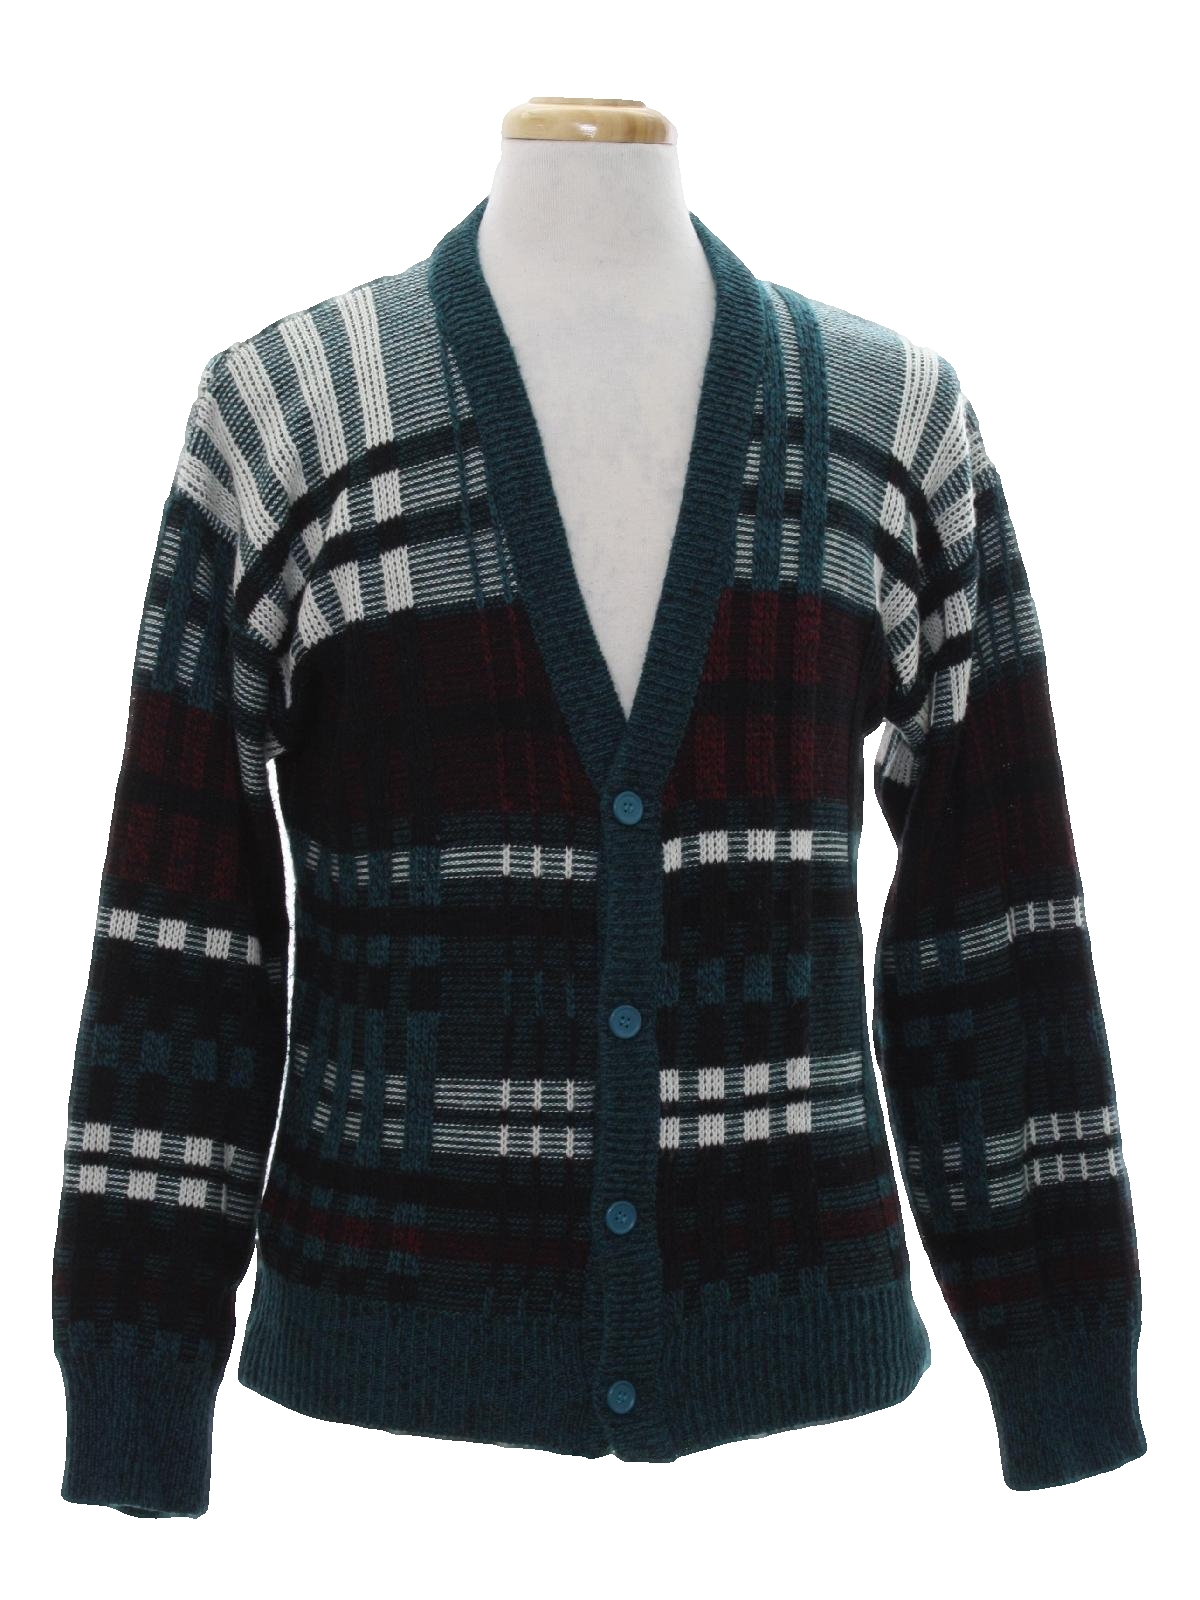 Retro Eighties Caridgan Sweater: 80s -JT Beckett- Mens black, white ...